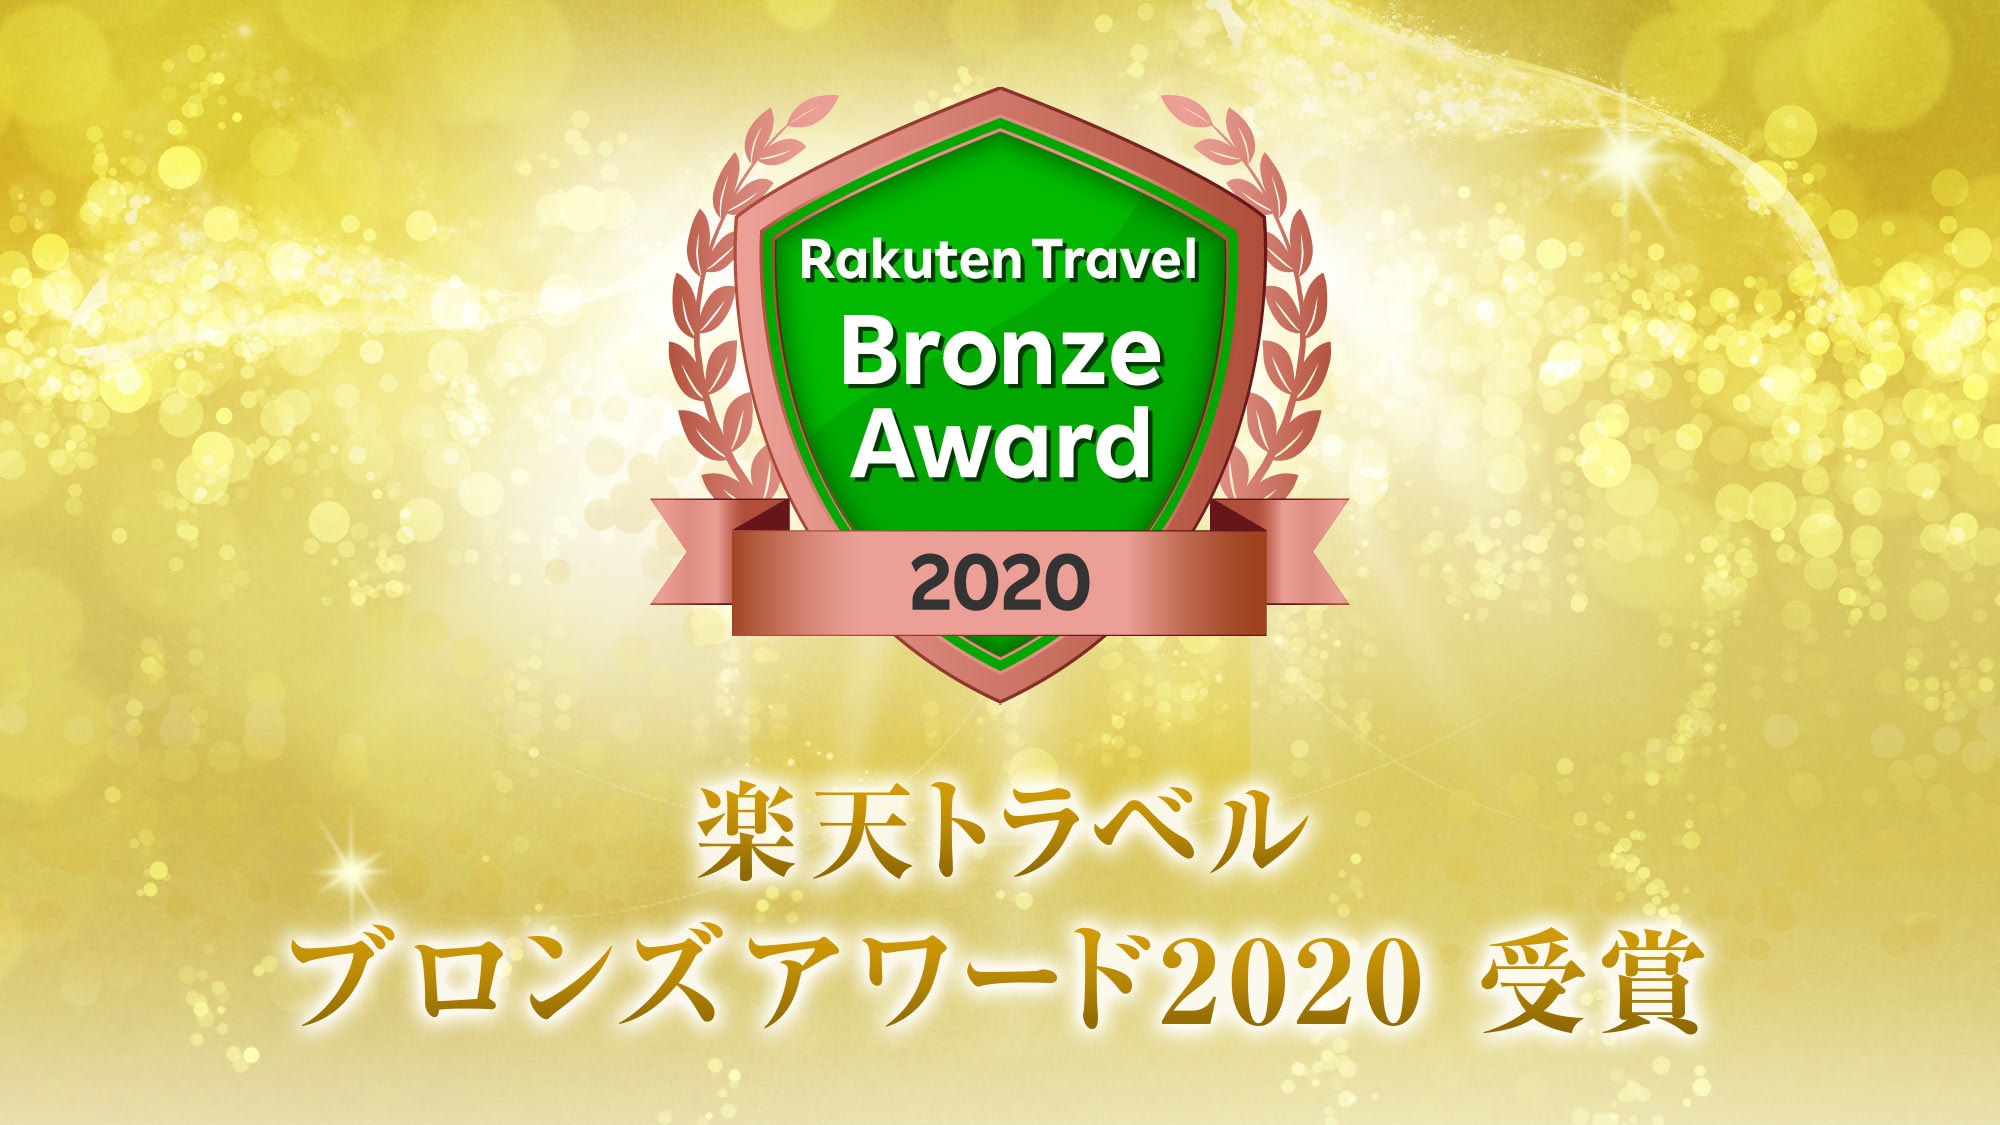 Among the many inns, we won the Rakuten Travel Japan Inn Award 2020.